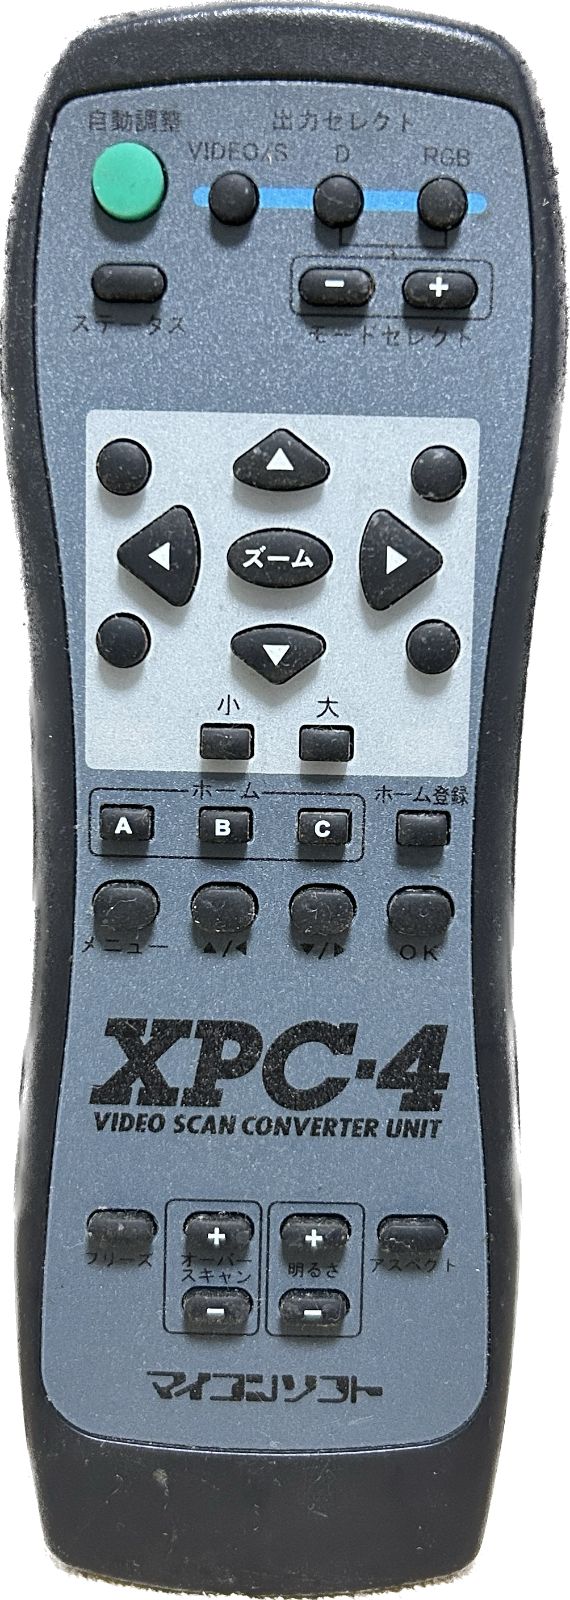 電波新聞社 マイコンソフト XPC-4 ビデオスキャンコンバーターユニット 